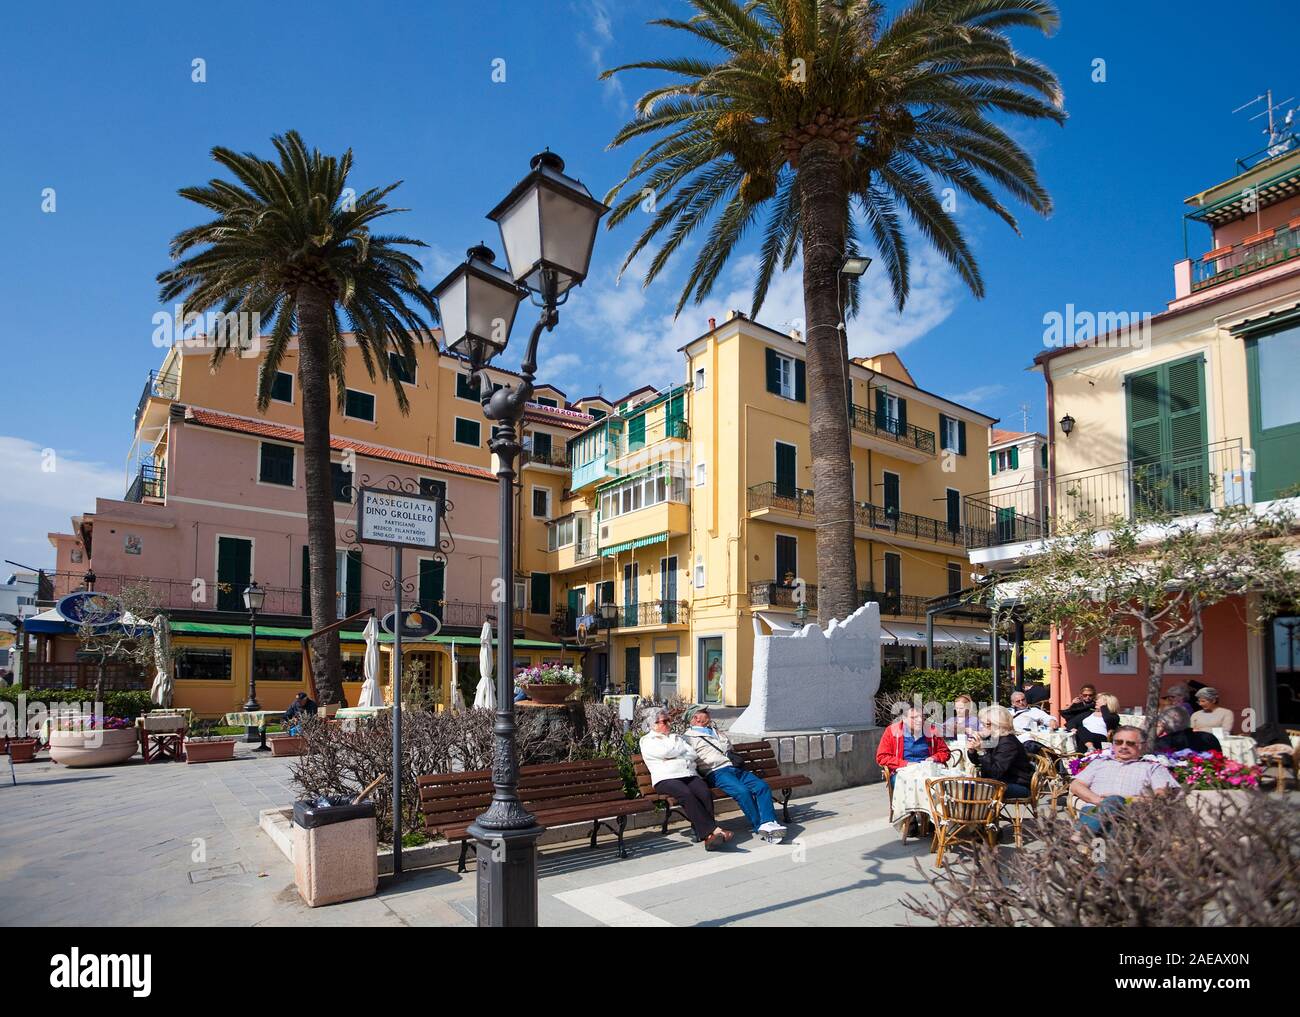 Cafe at the promenade of Alassio, Riviera di Ponente, Liguria, Italy Stock Photo